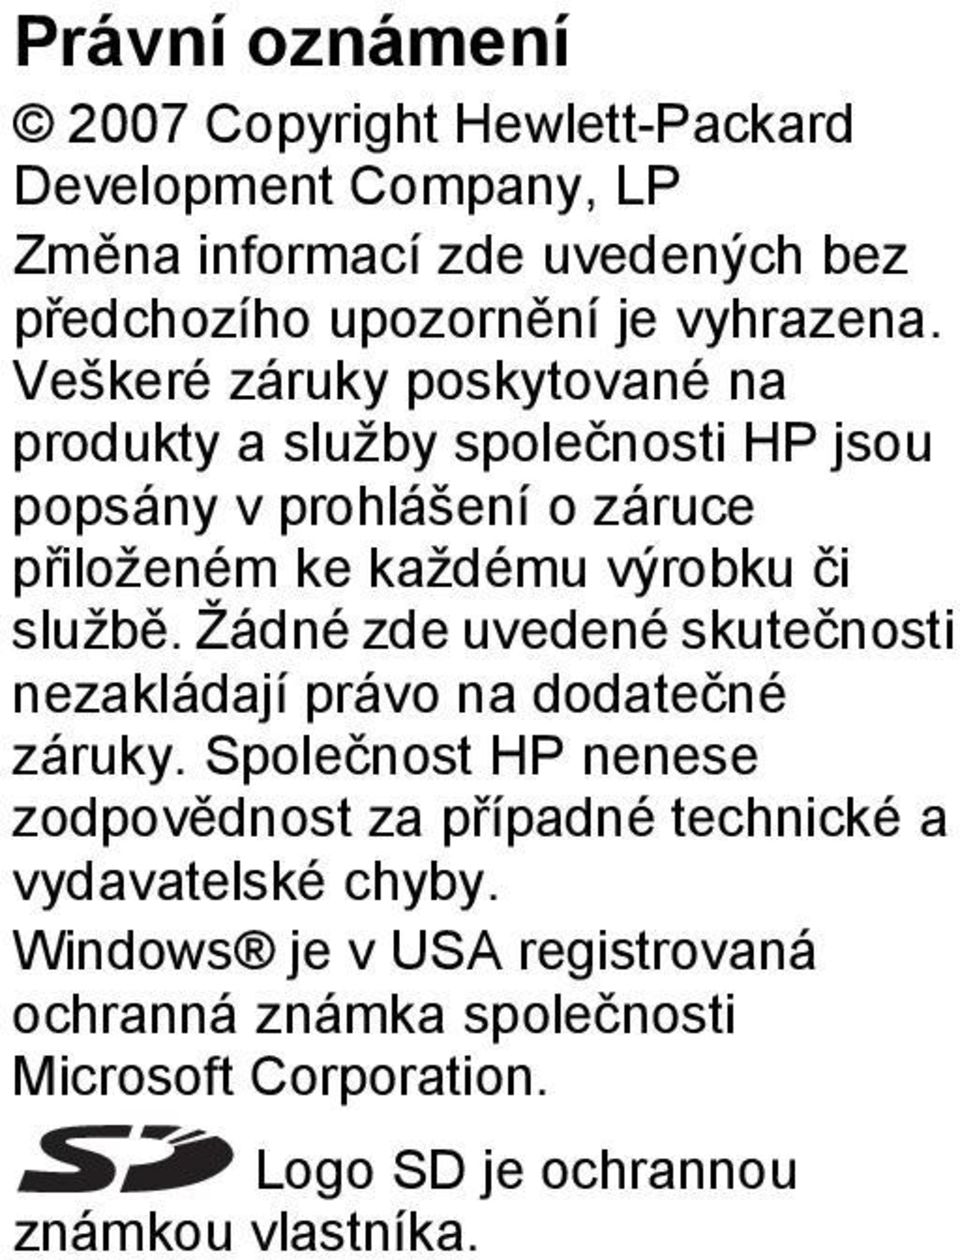 Veškeré záruky poskytované na produkty a služby společnosti HP jsou popsány v prohlášení o záruce přiloženém ke každému výrobku či